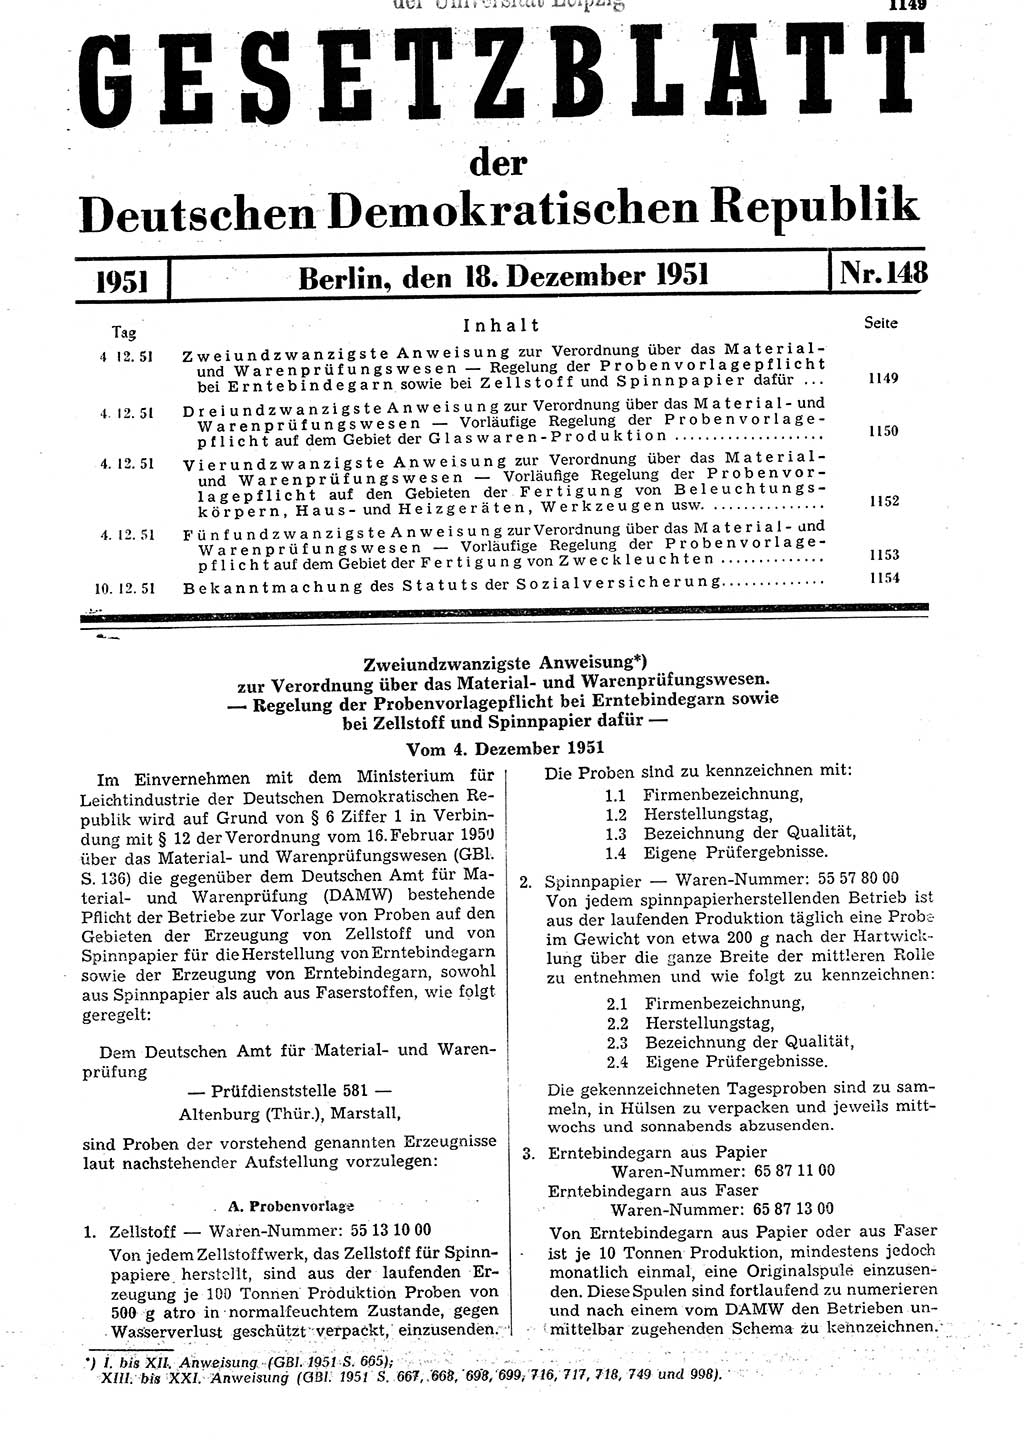 Gesetzblatt (GBl.) der Deutschen Demokratischen Republik (DDR) 1951, Seite 1149 (GBl. DDR 1951, S. 1149)